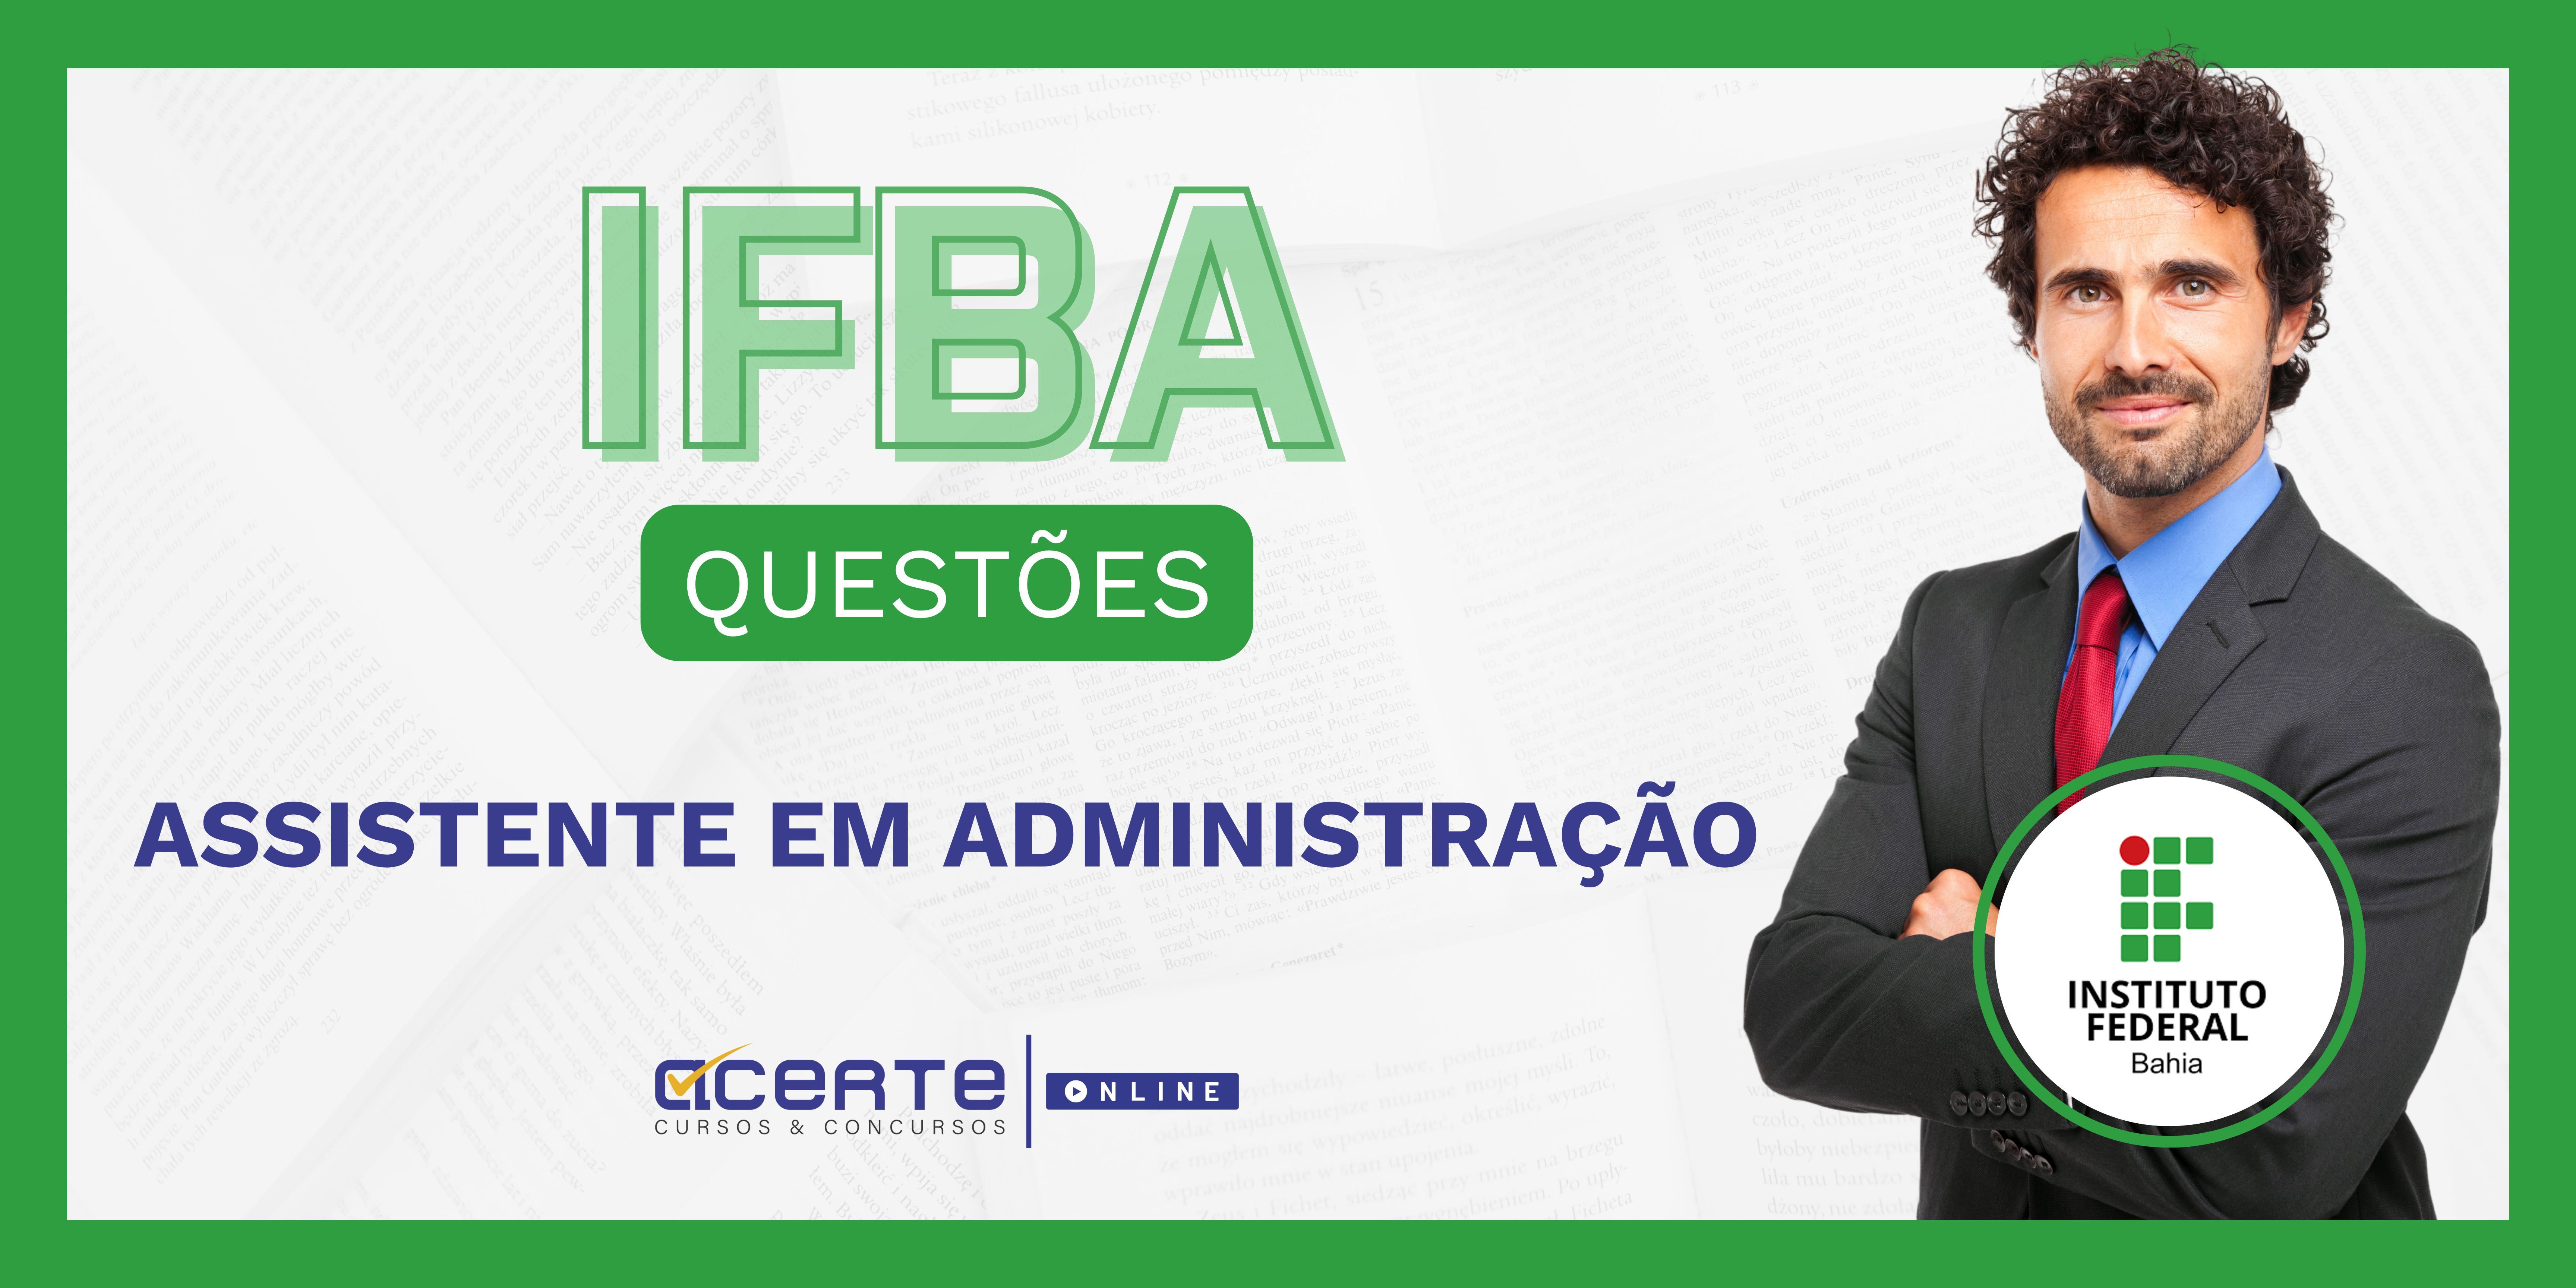 IFBA QUESTÕES - Assistente em Administração - Edital Publicado - ONLINE